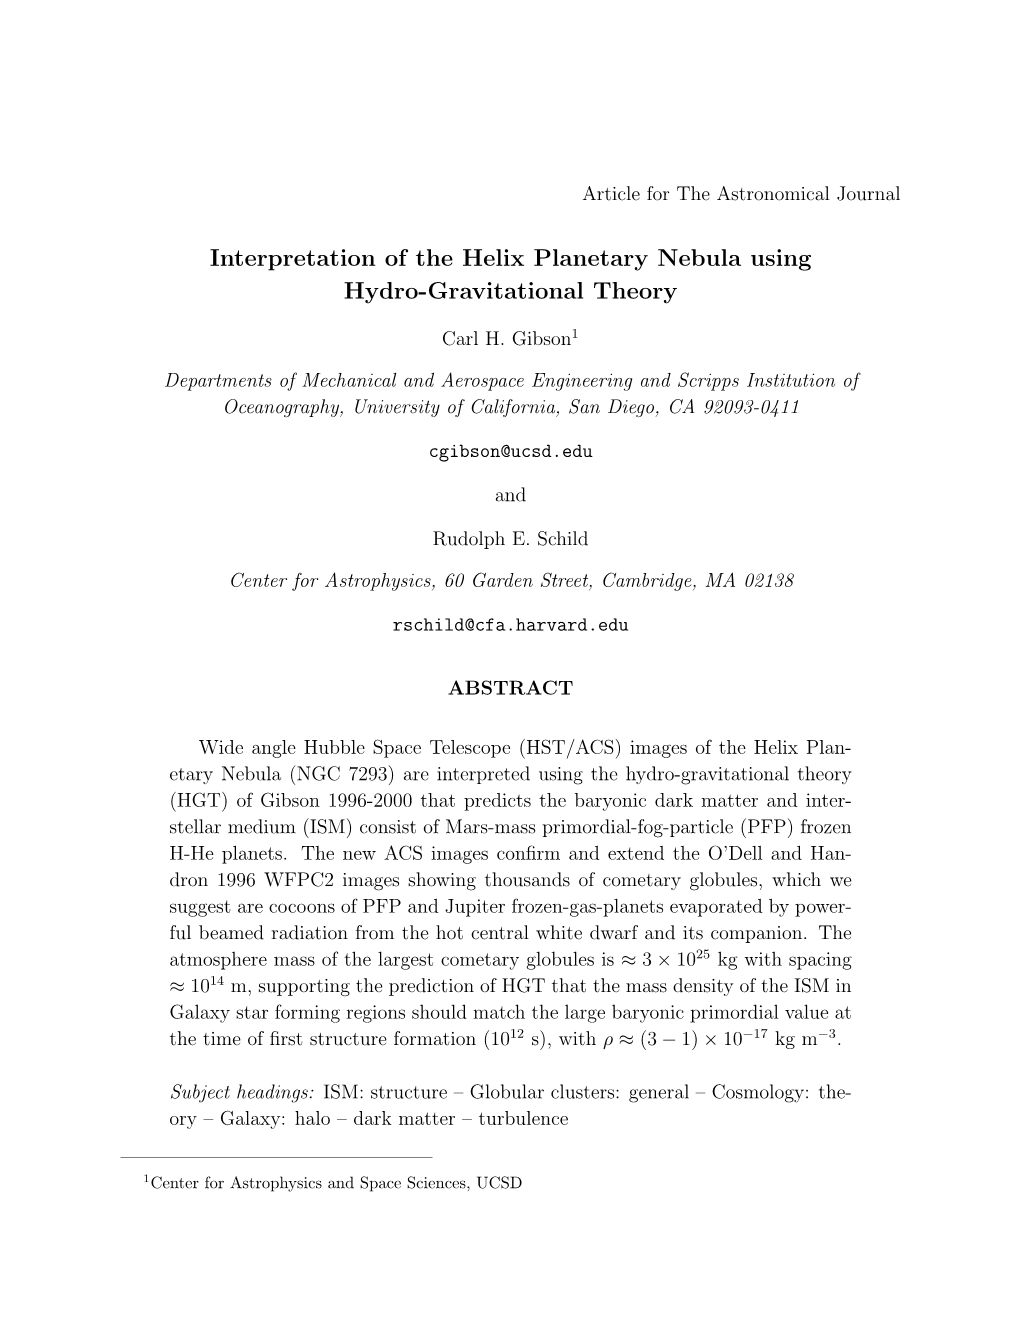 Interpretation of the Helix Planetary Nebula Using Hydro-Gravitational Theory